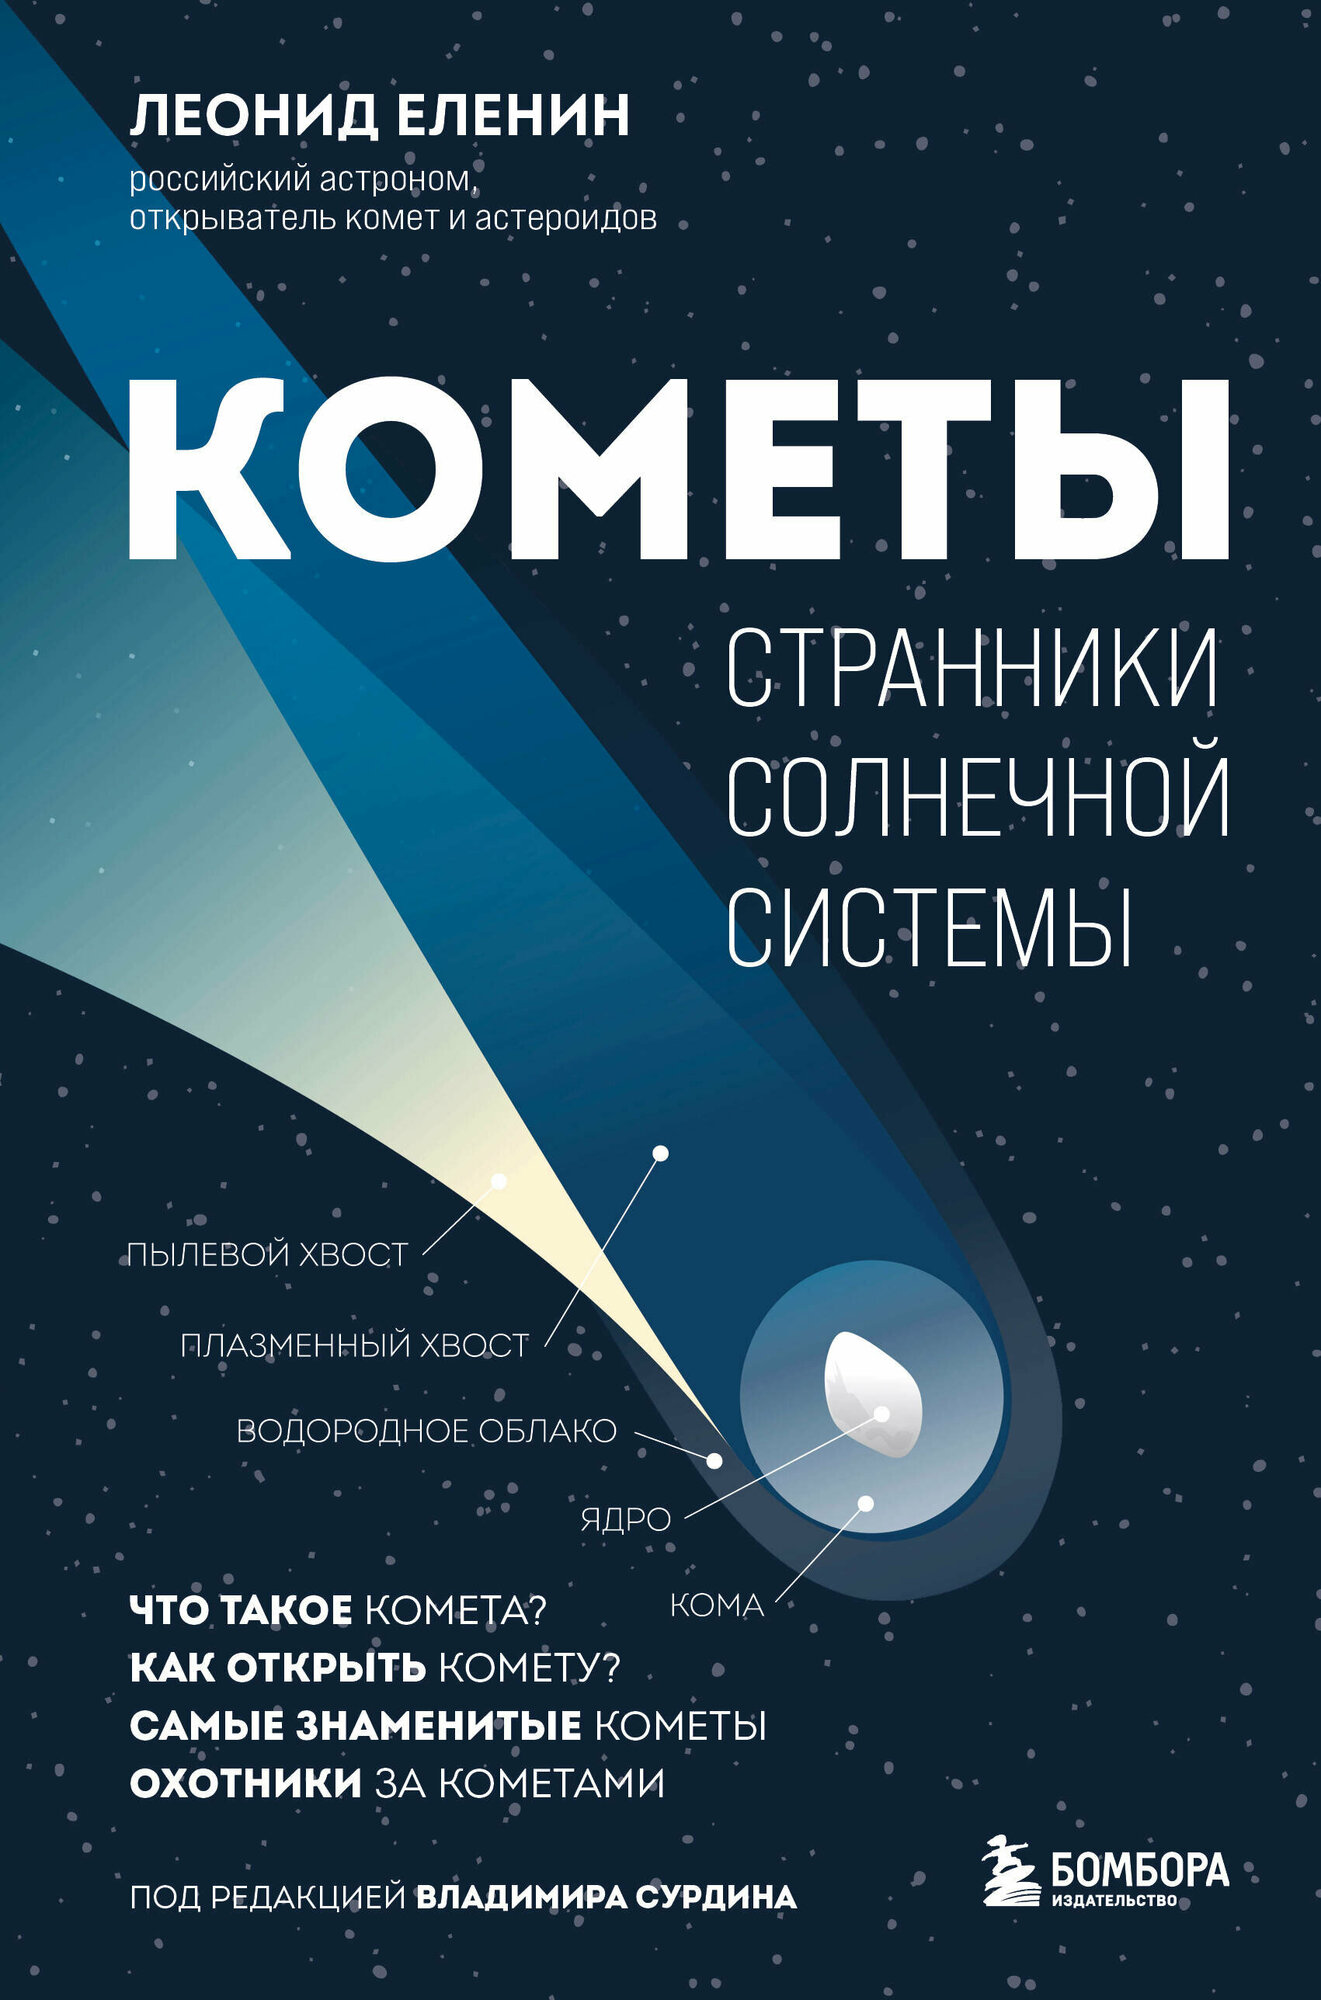 Кометы. Странники Солнечной системы - фото №15